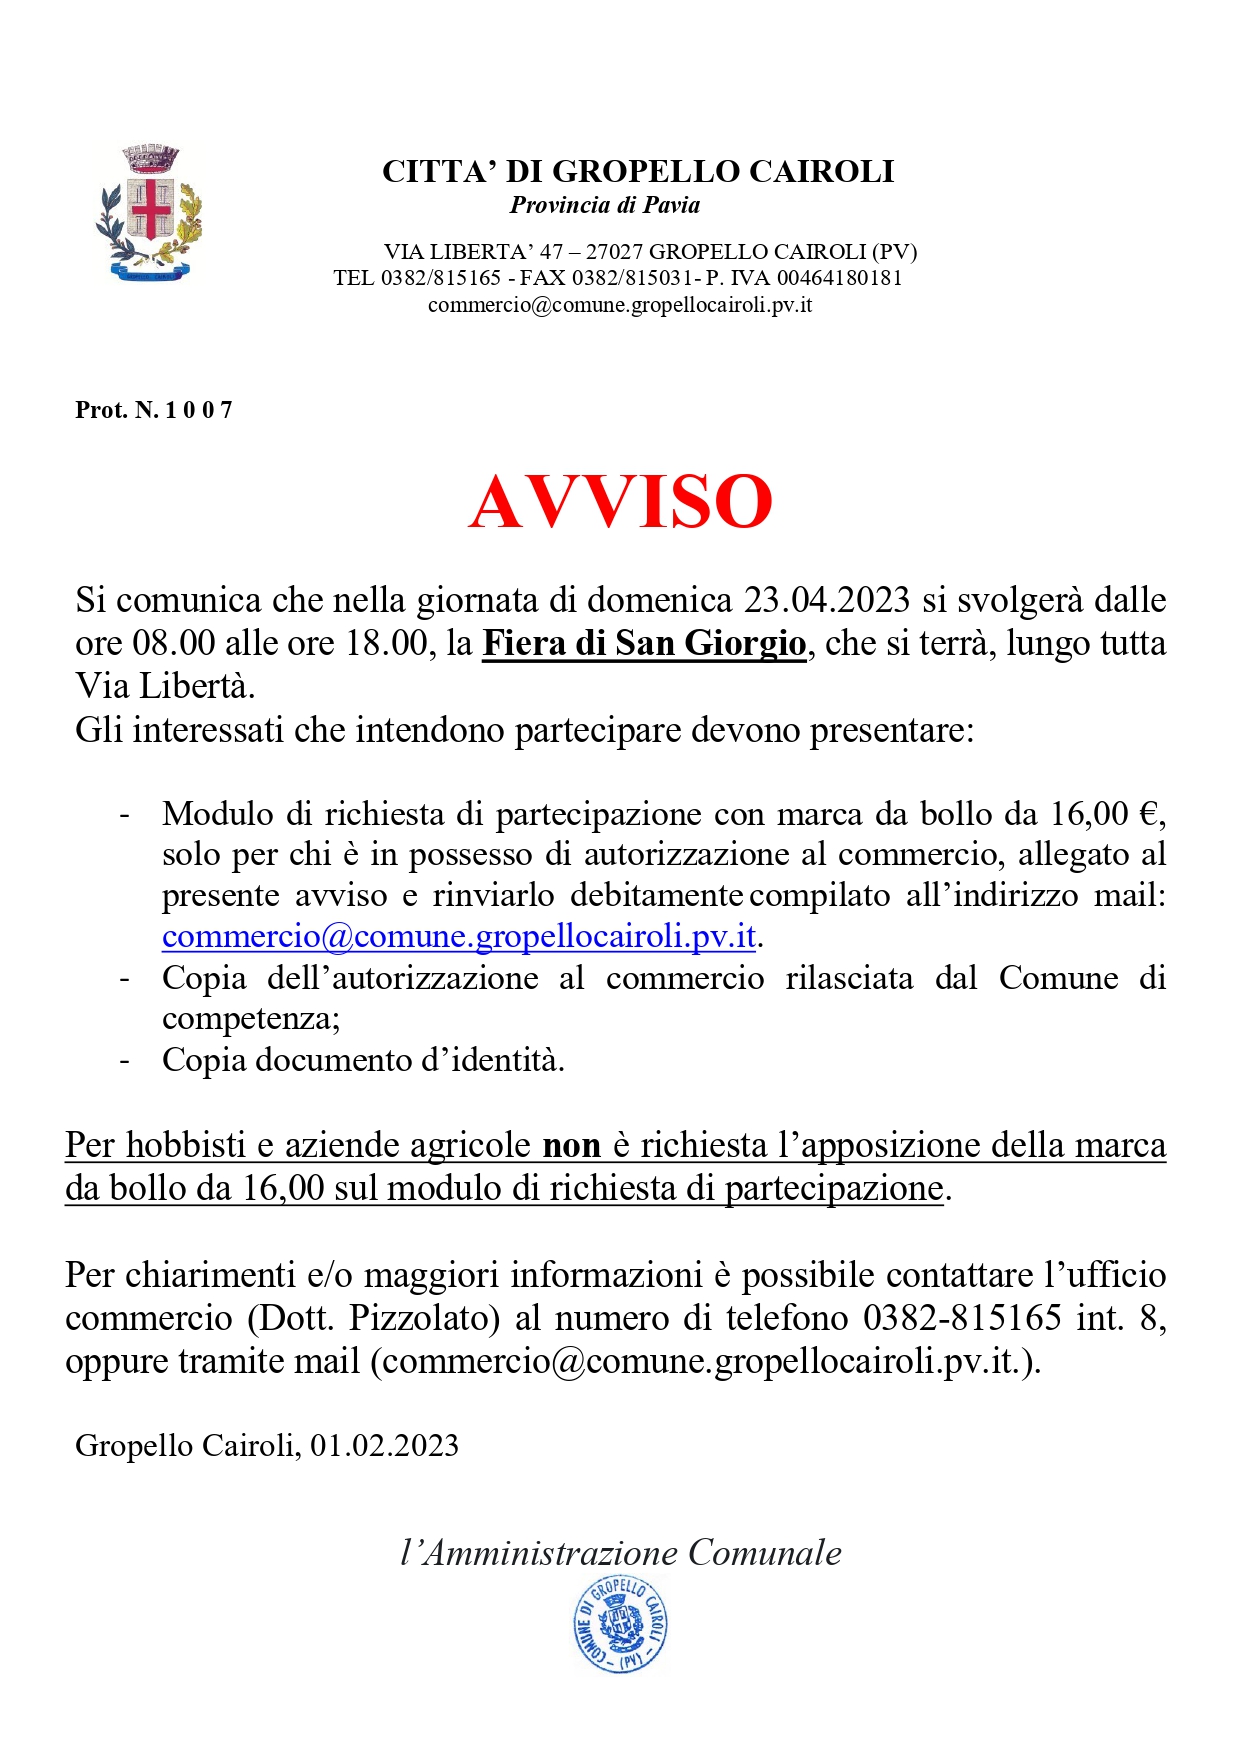 Avviso Fiera Di San Giorgio In Data 23.04.2023